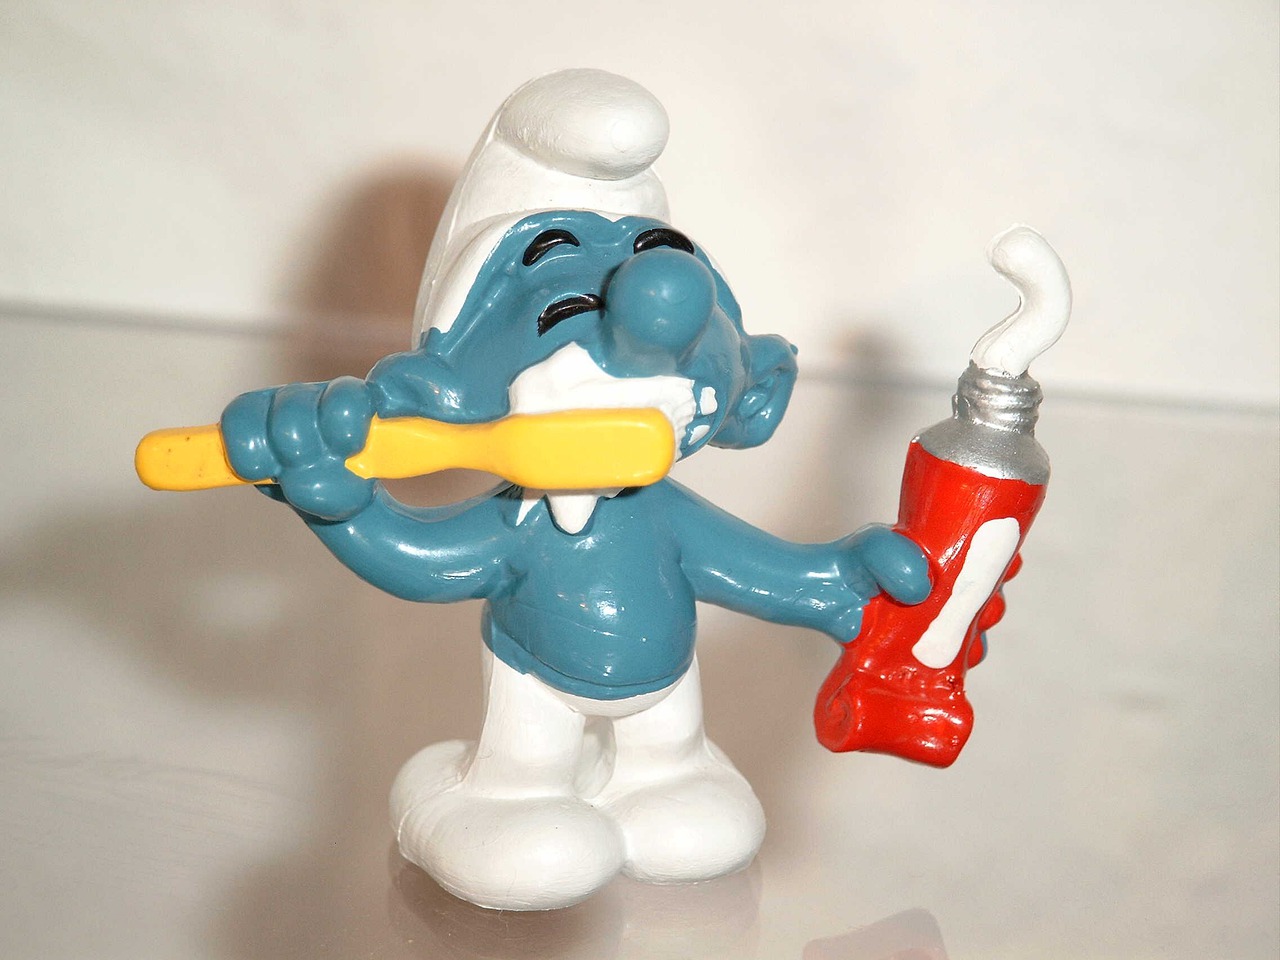 Figurka smerfa myjącego zęby szczoteczką i trzymający w ręce pastę do zębów